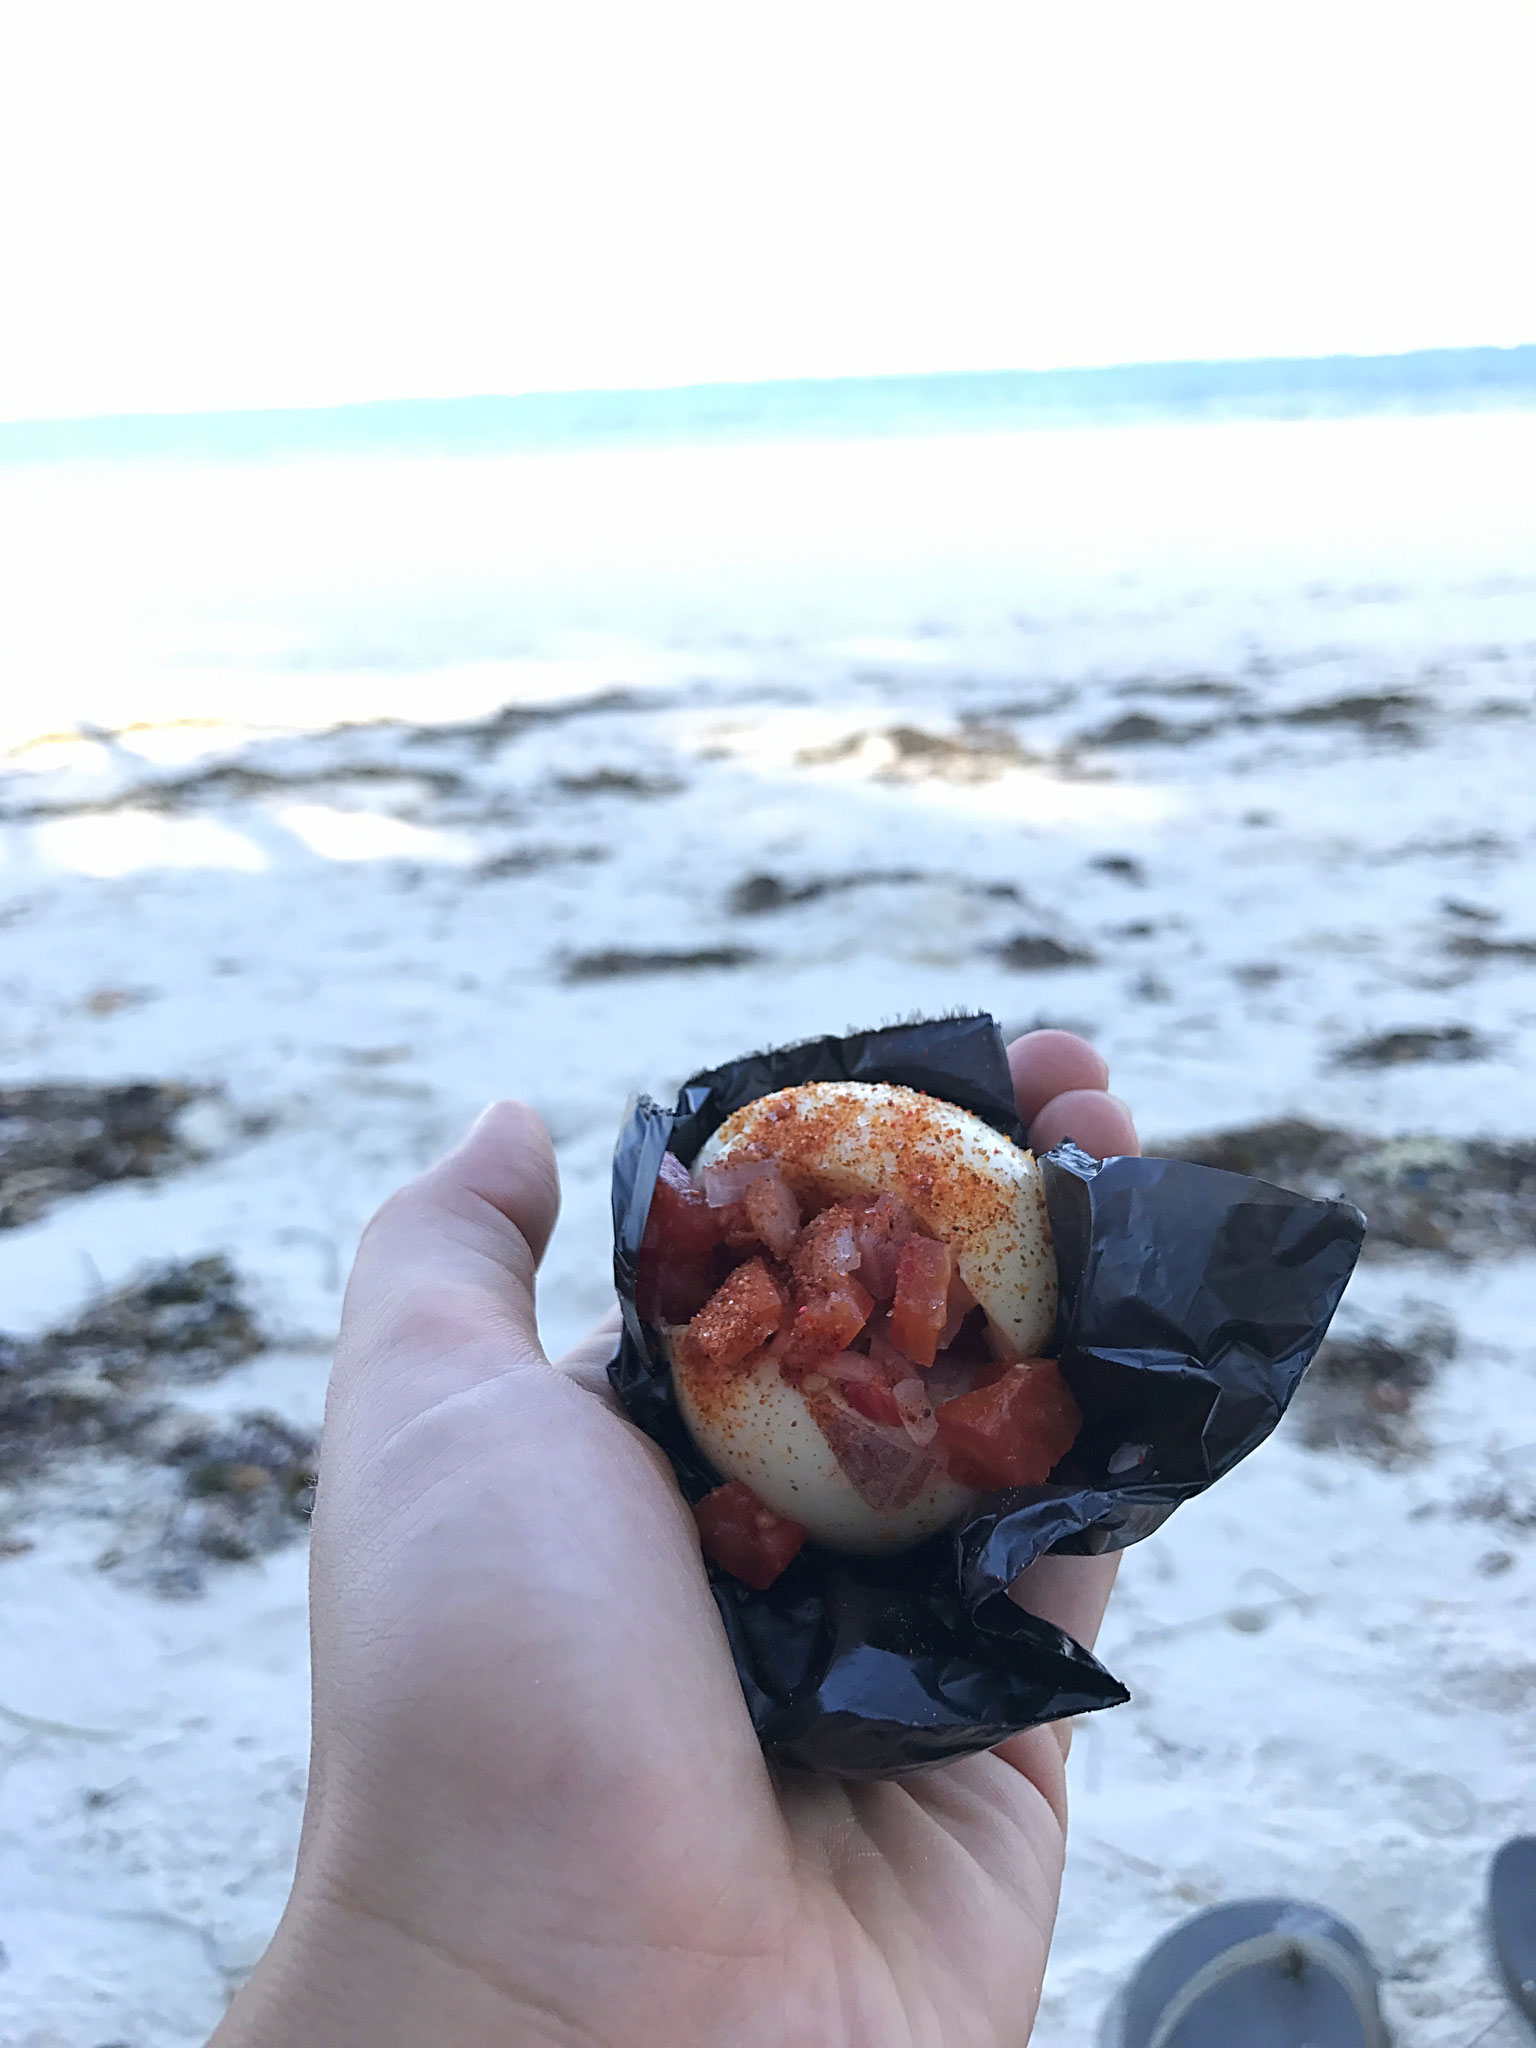 Leckerer Snack vom fliegenden Verkäufer am Strand / Delicious street food at the beach